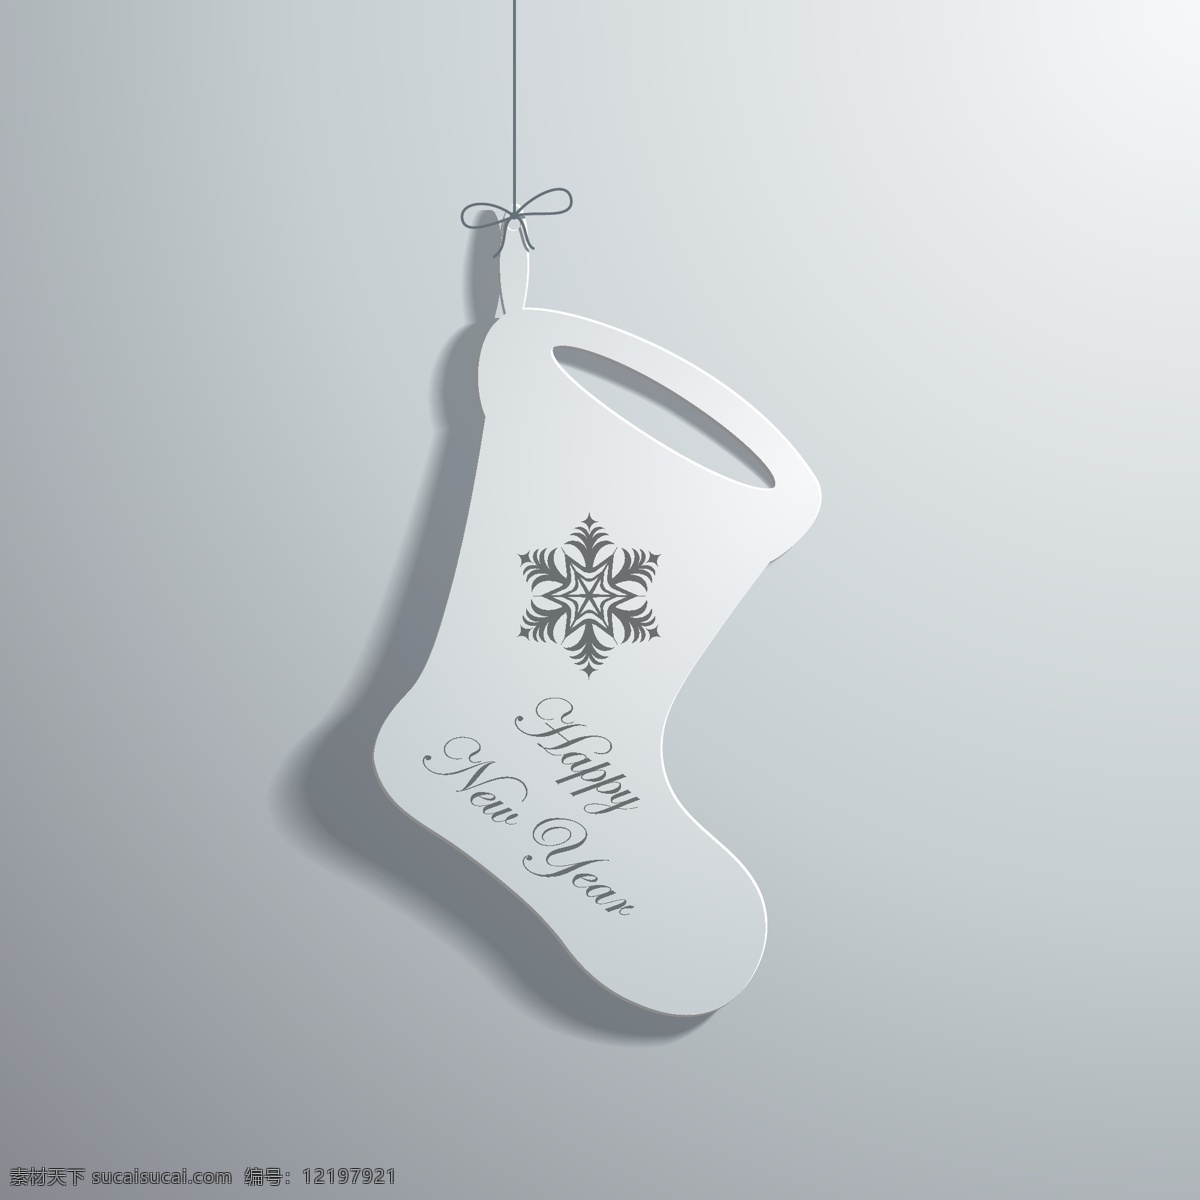 立体 圣诞 袜 立体袜子 圣诞袜 纸张设计 立体背景 背景图案 背景素材 生活百科 矢量素材 灰色